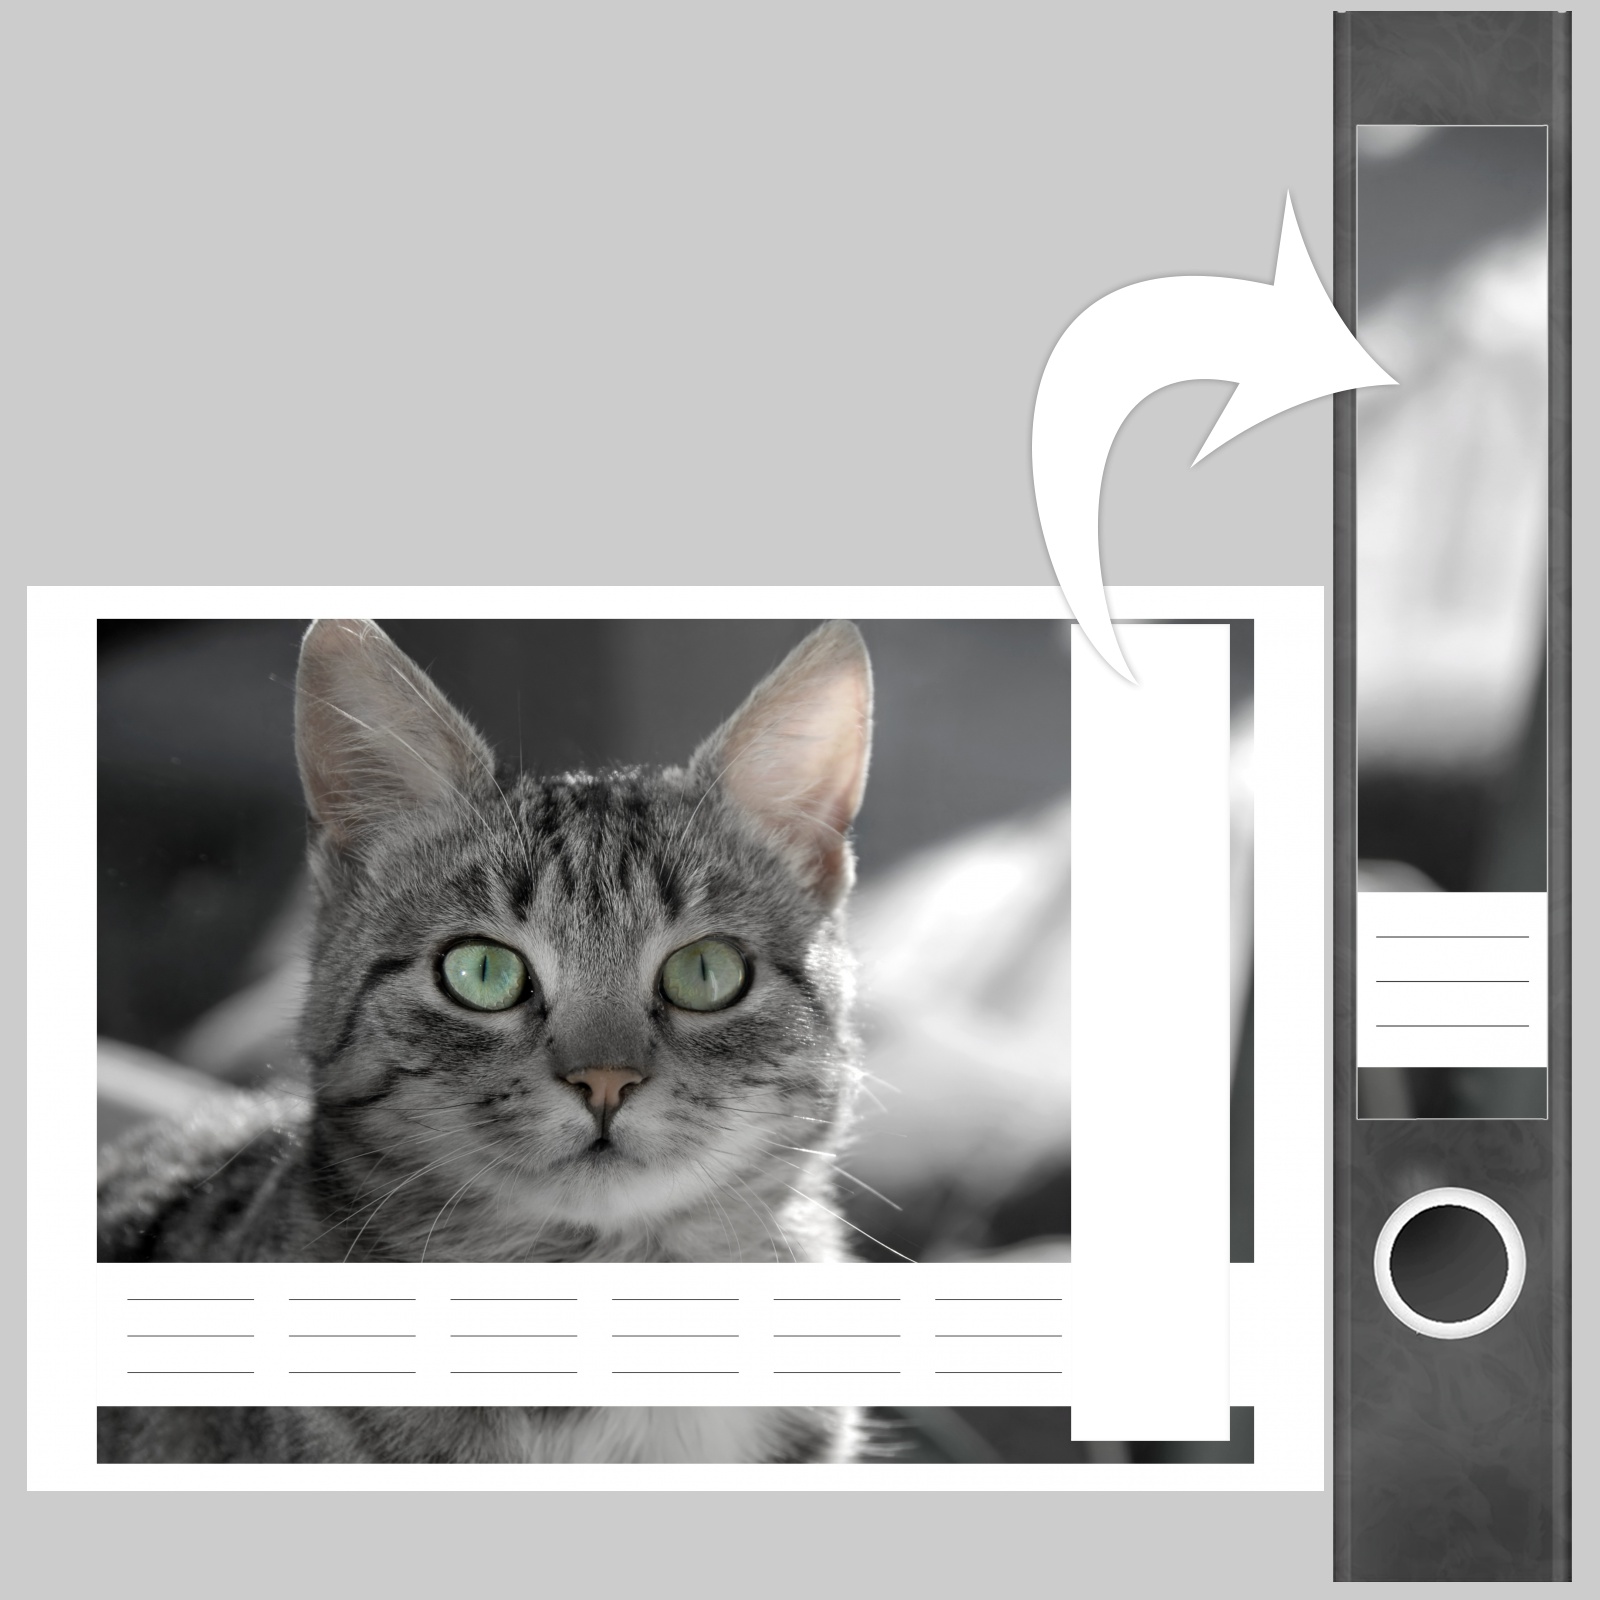 Selbstklebende Design Ordneretiketten Rückenschilder gestreifte Katze grau 7 Aufkleber für schmale Ordnerrücken Etiketten für Ordner